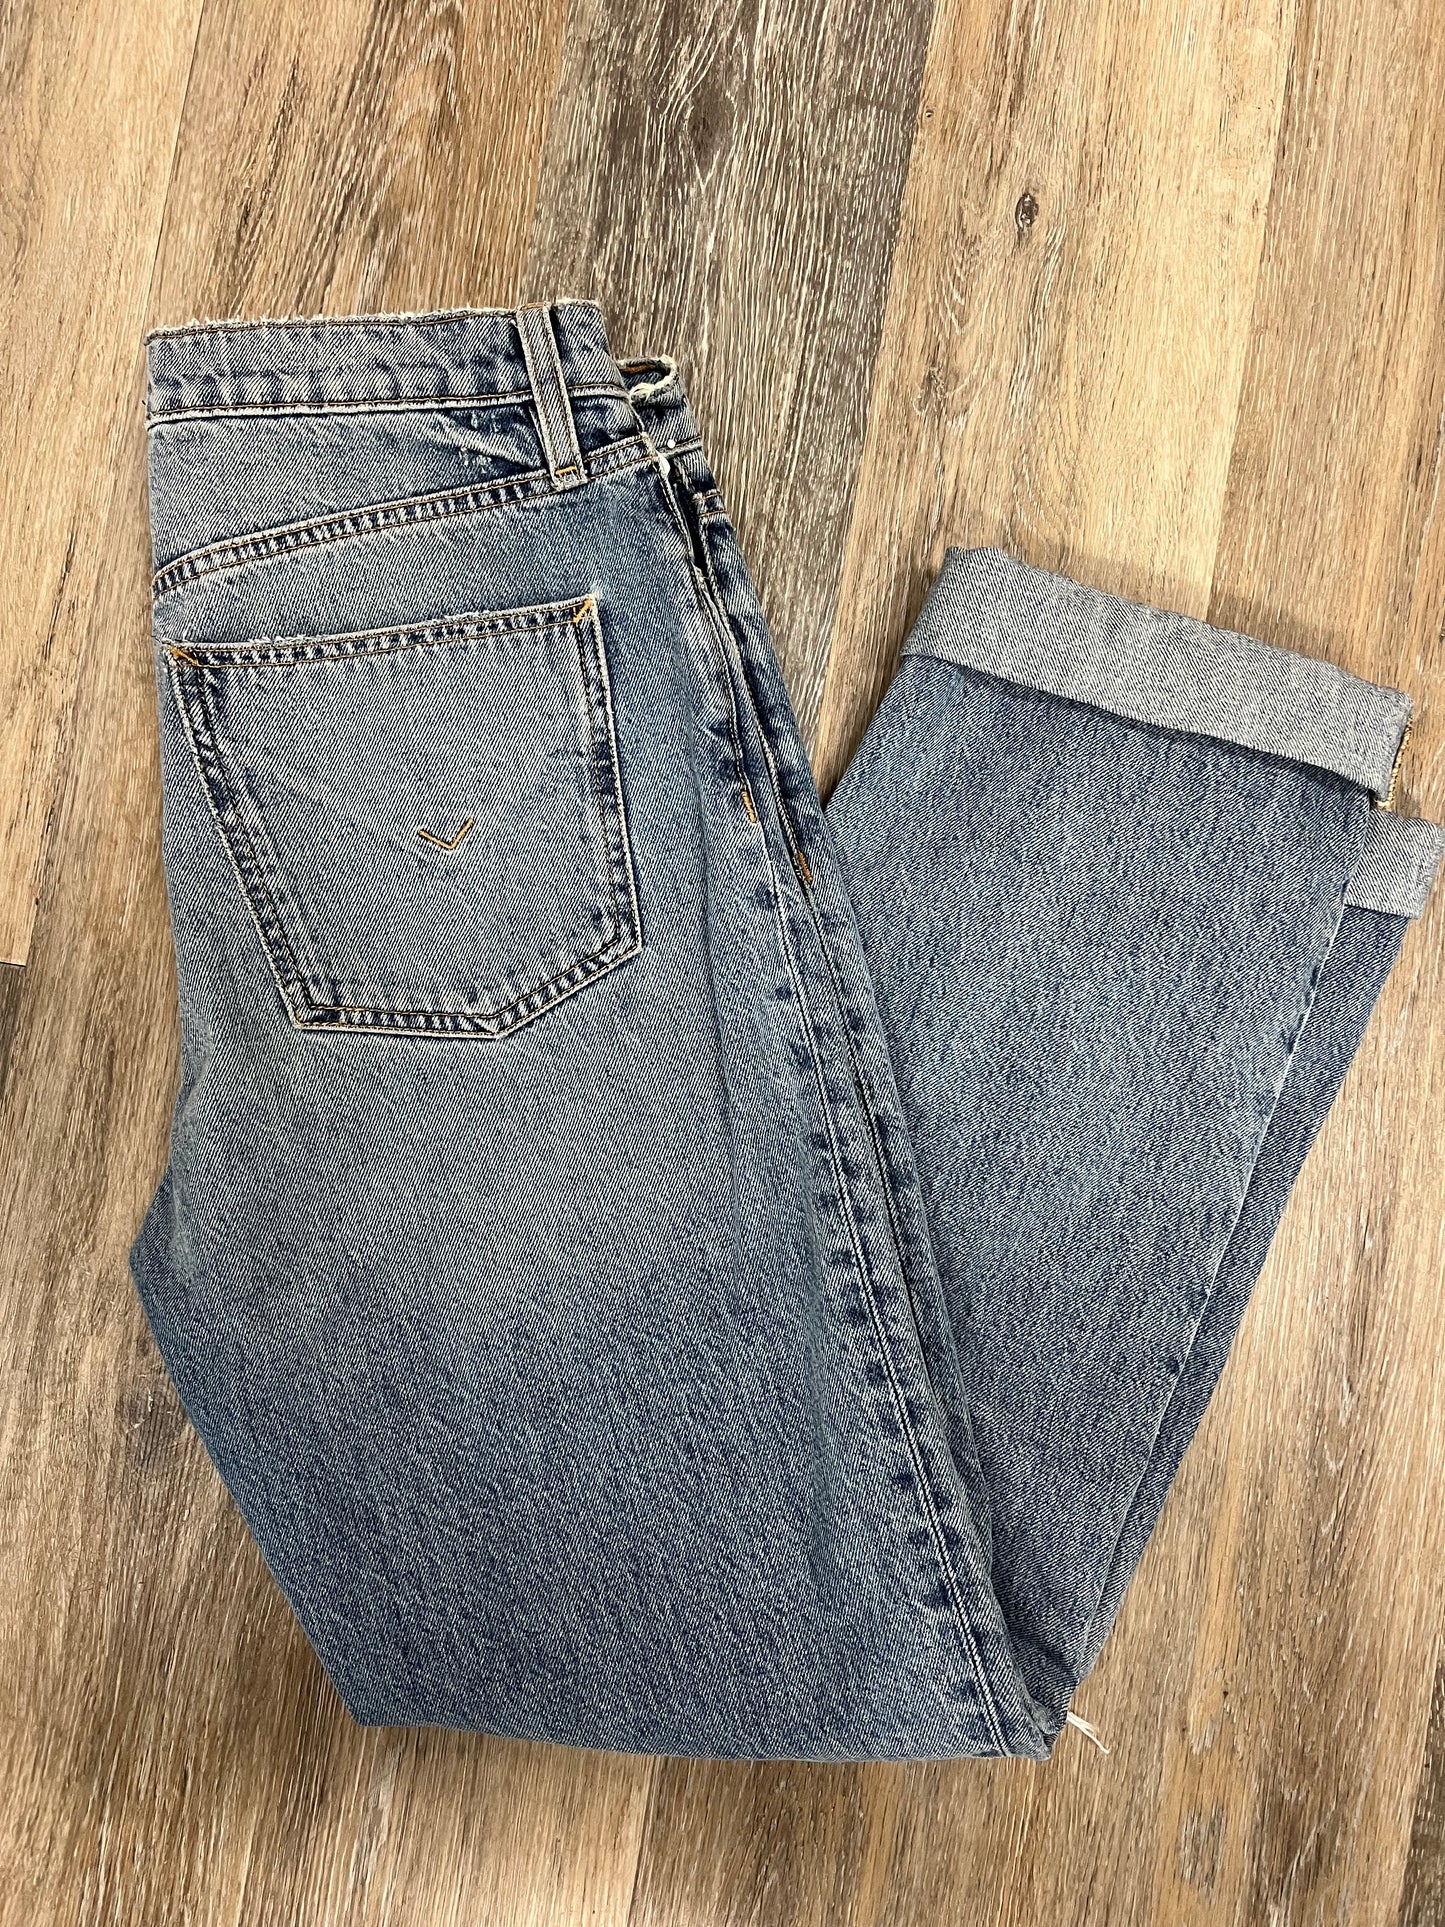 Jeans Designer By Hudson  Size: 4/27